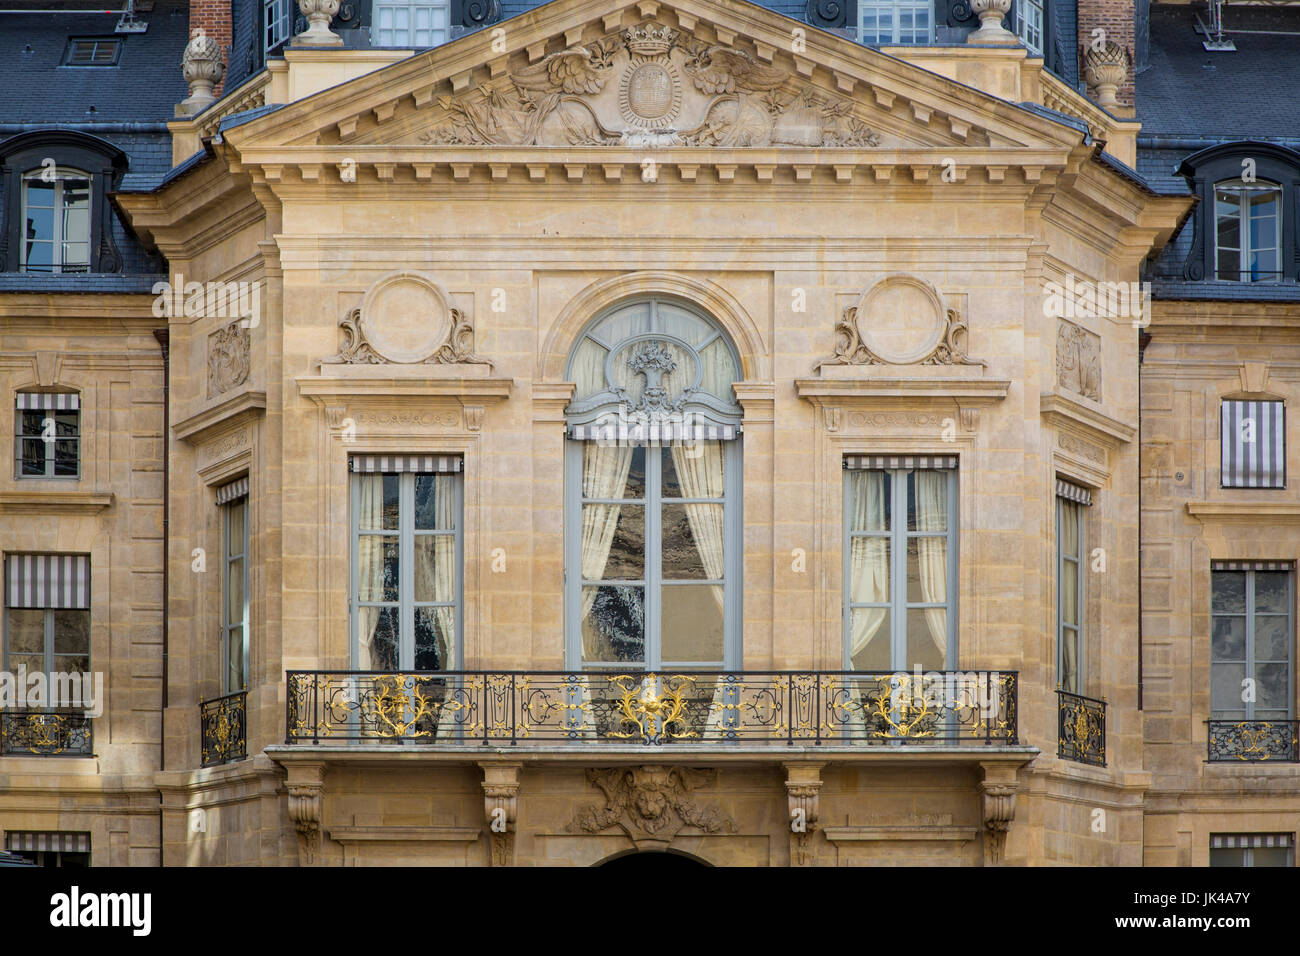 Ministerium für Kultur und Kommunikation Gebäude angebracht, Palais Royal, Paris Frankreich Stockfoto